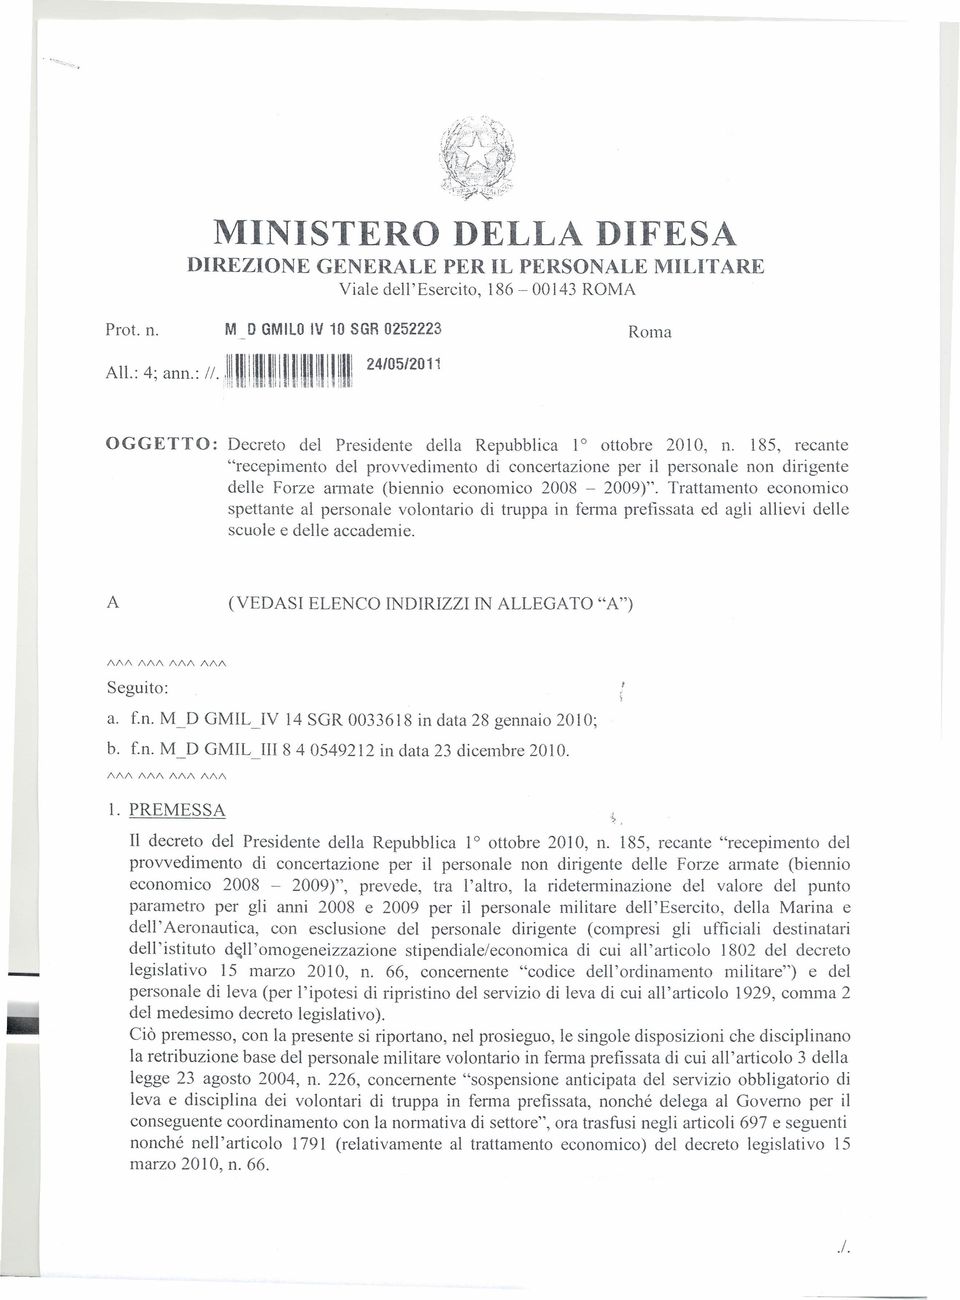 185, recante "recepimento del provvedimento di concertazione per il personale non dirigente delle Forze annate (biennio economico 2008-2009)".